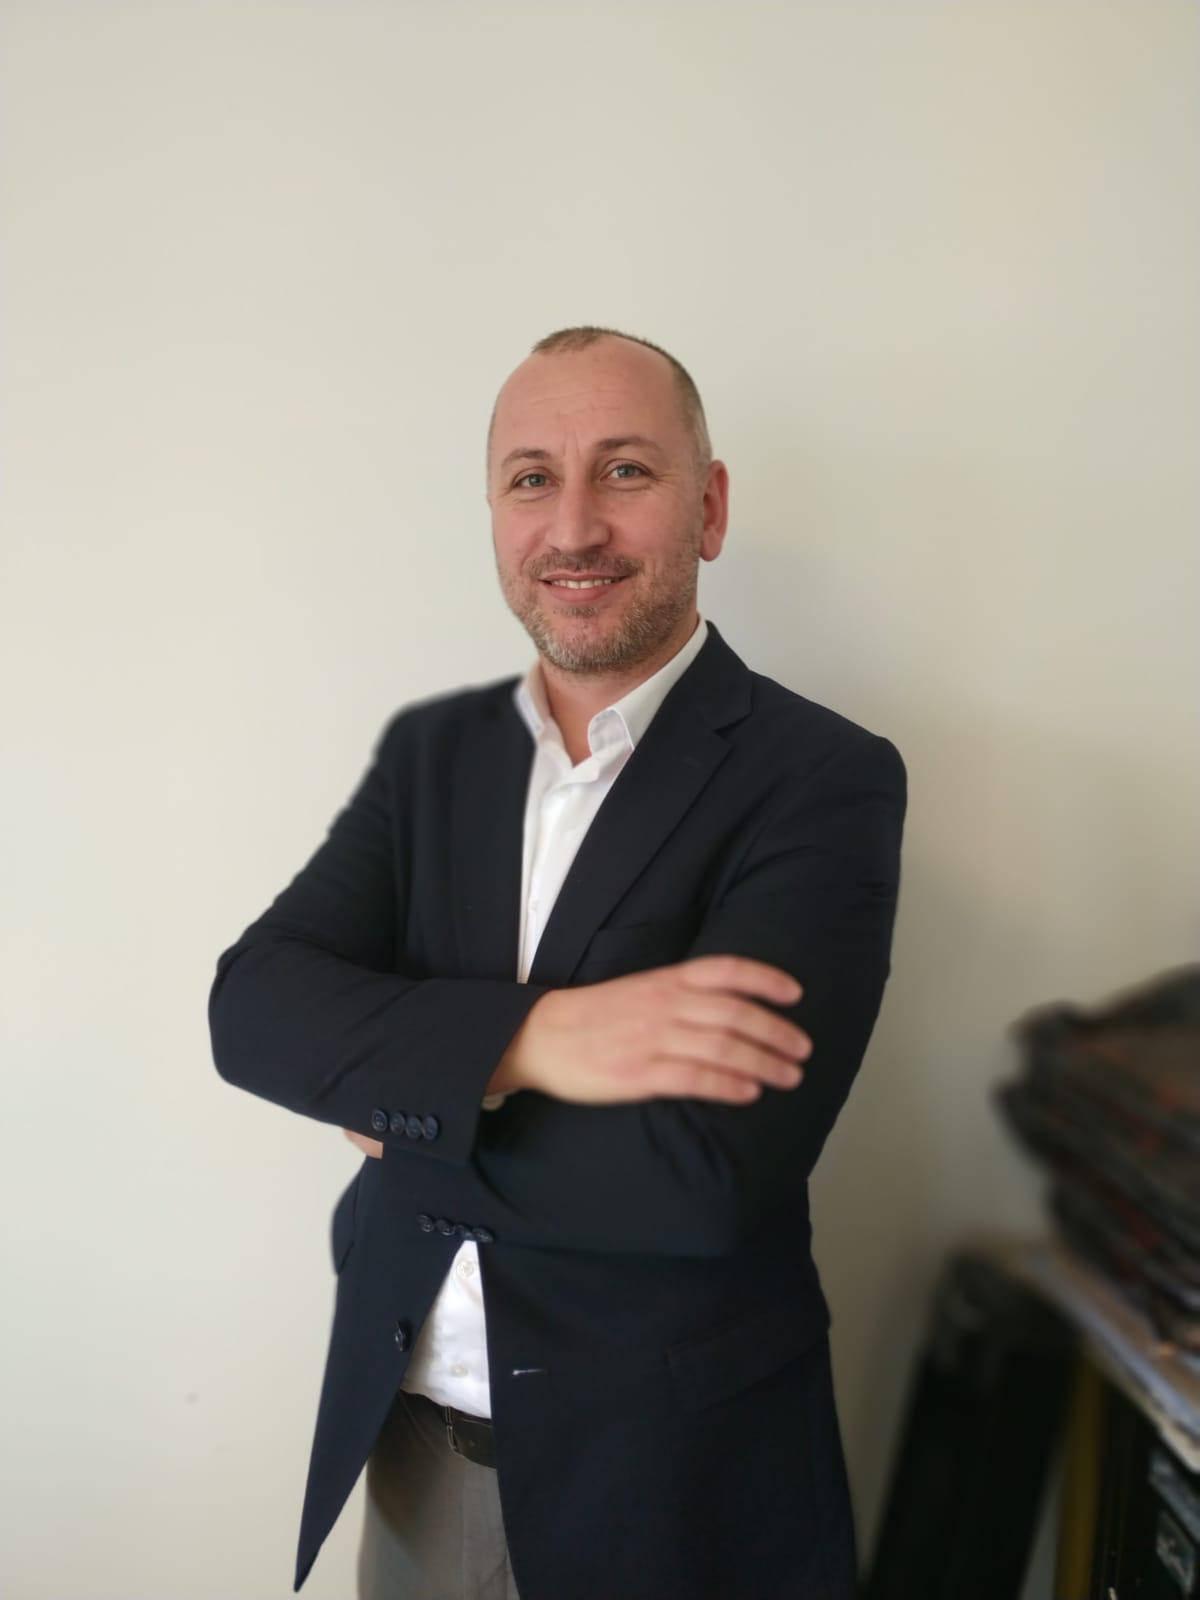 Hüdayi Sosyal Girişimcilik Akademisi Yöneticisi Mustafa BAŞER